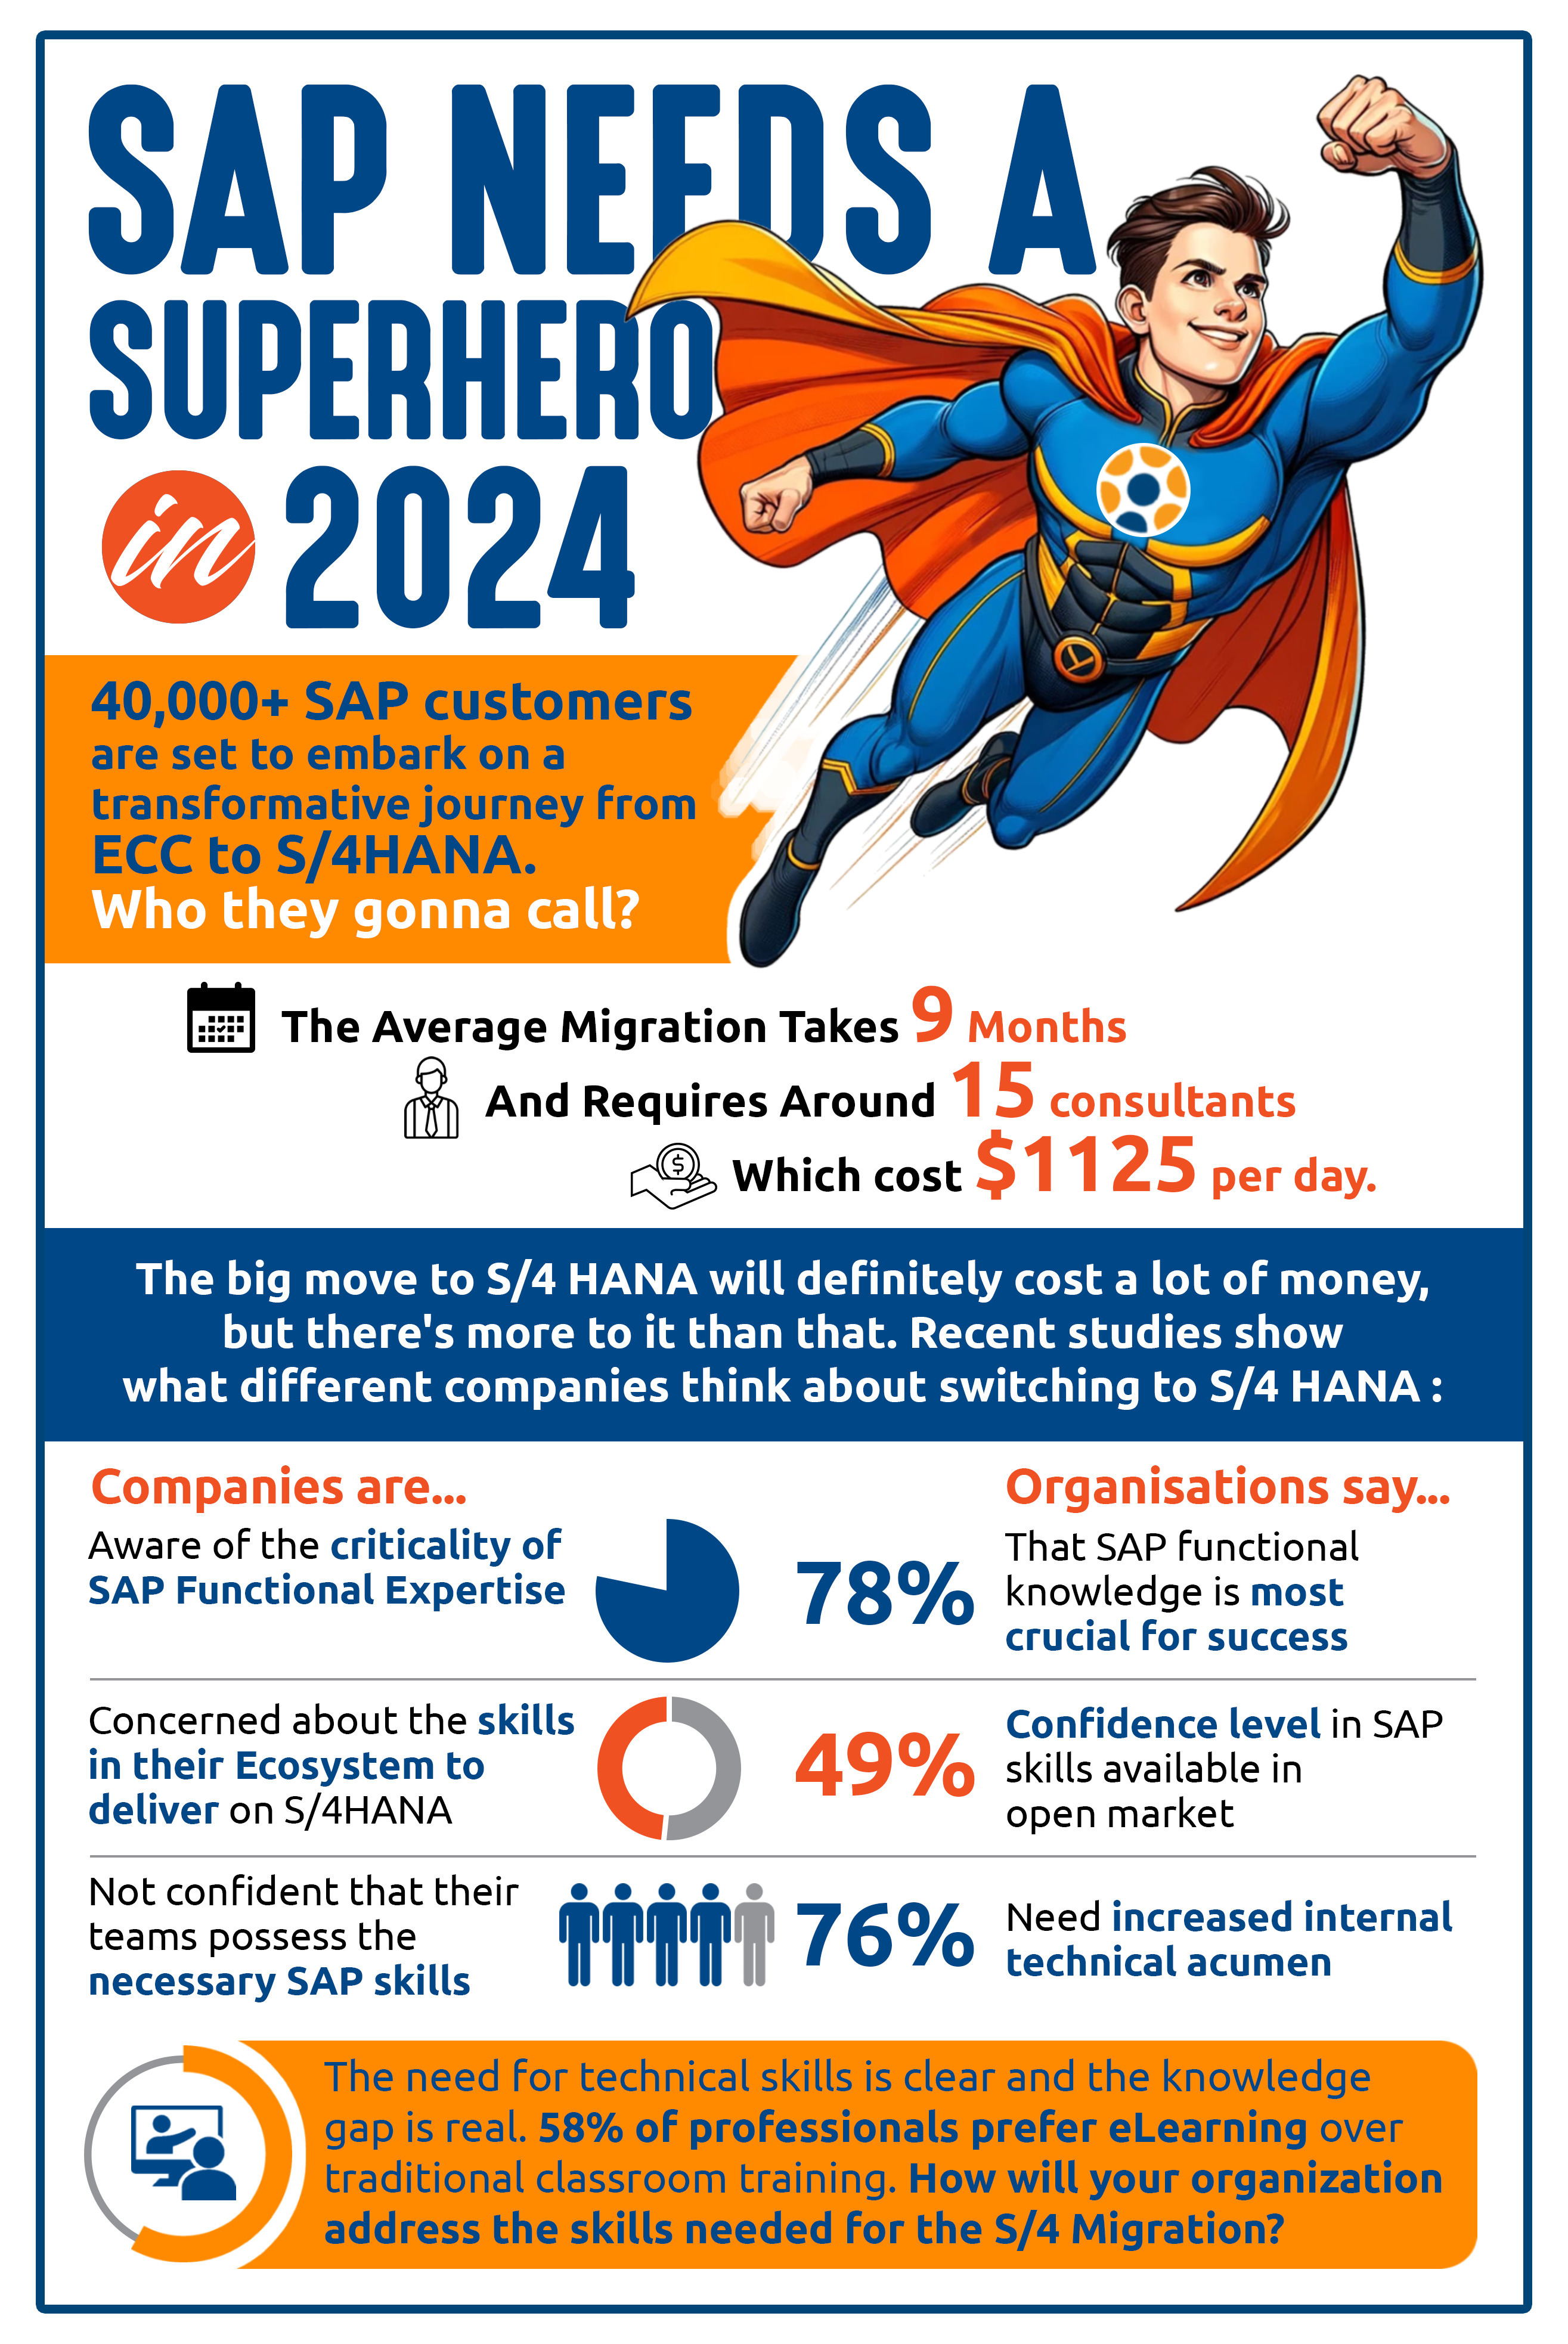 SAP Needs a Superhero in 2024!